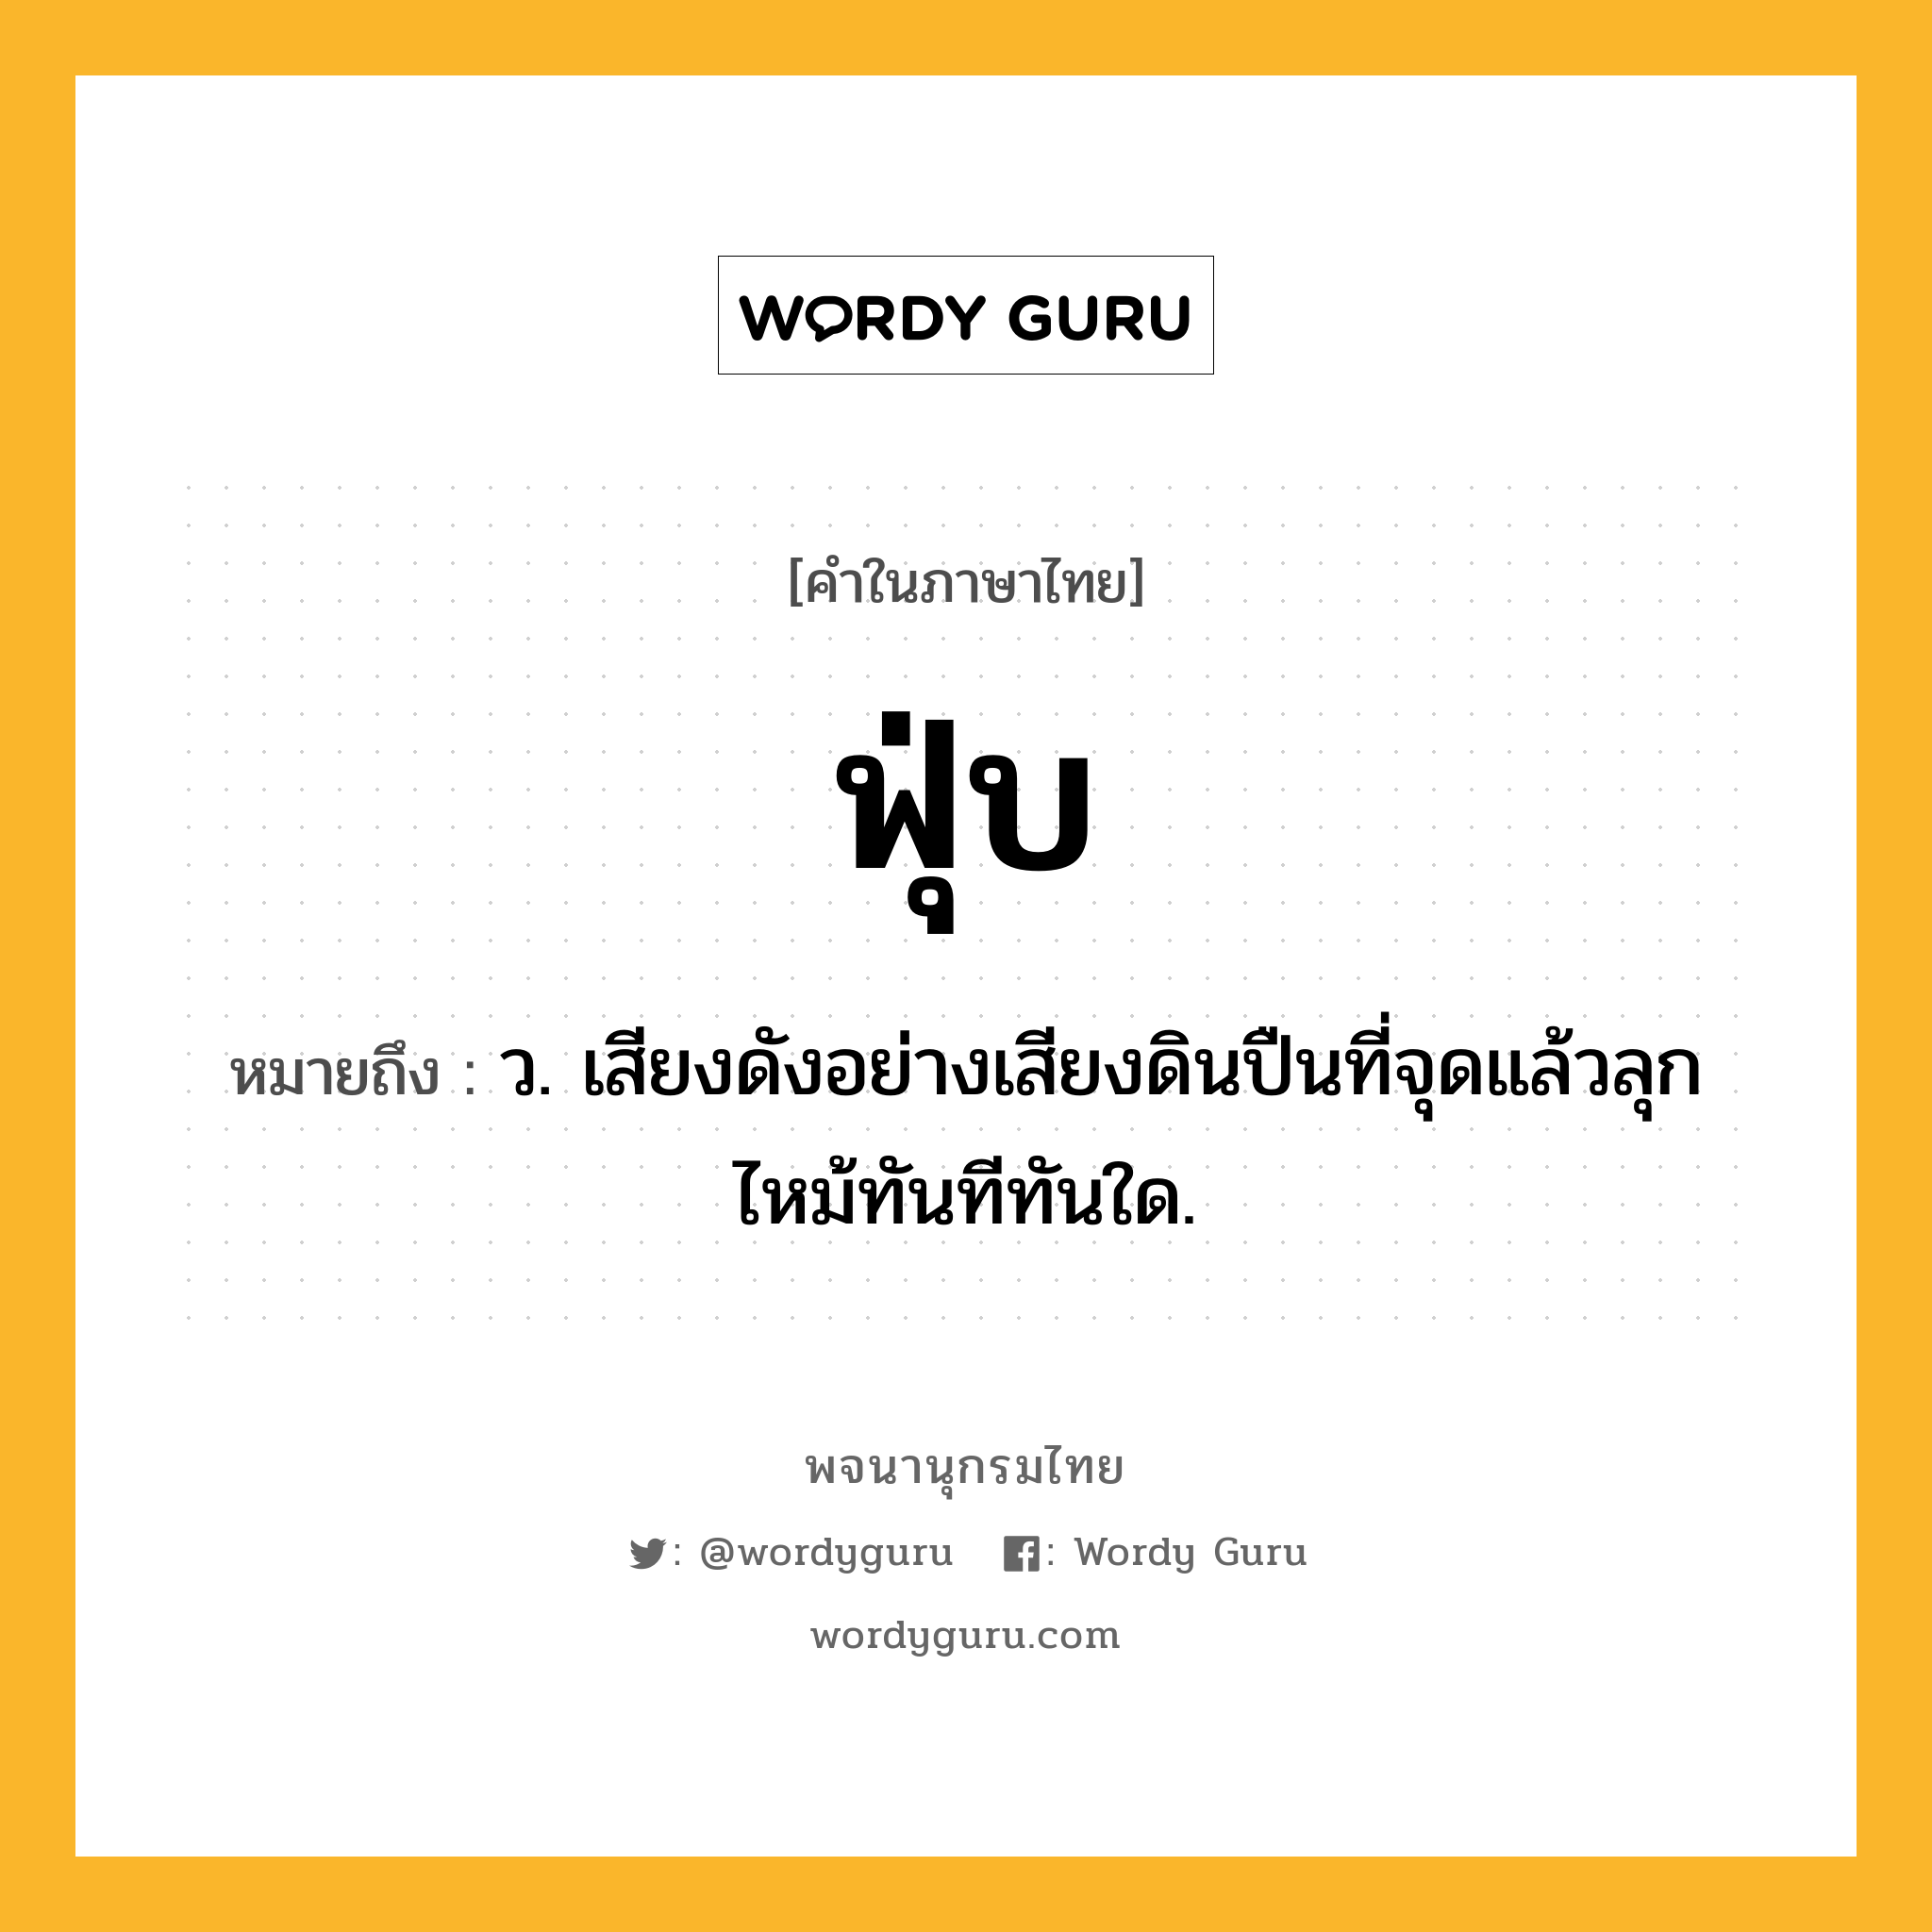 ฟุ่บ ความหมาย หมายถึงอะไร?, คำในภาษาไทย ฟุ่บ หมายถึง ว. เสียงดังอย่างเสียงดินปืนที่จุดแล้วลุกไหม้ทันทีทันใด.